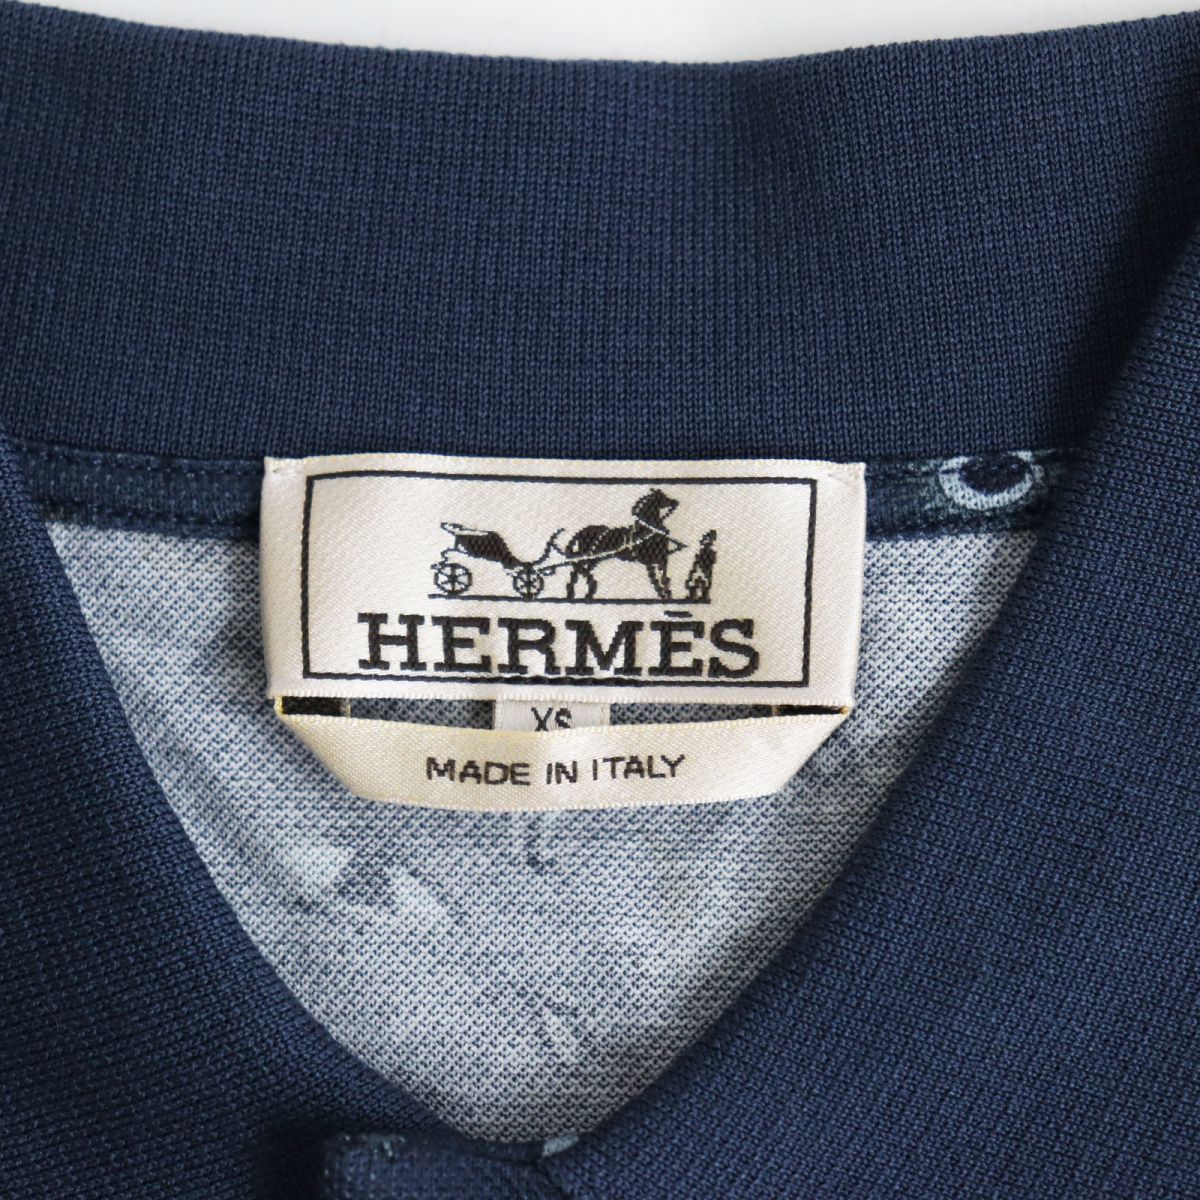  не использовался товар *22SS HERMES Hermes ho воздушный *iz* super H общий рисунок рубашка-поло с коротким рукавом оттенок голубого XS Италия производства стандартный товар с биркой мужской 